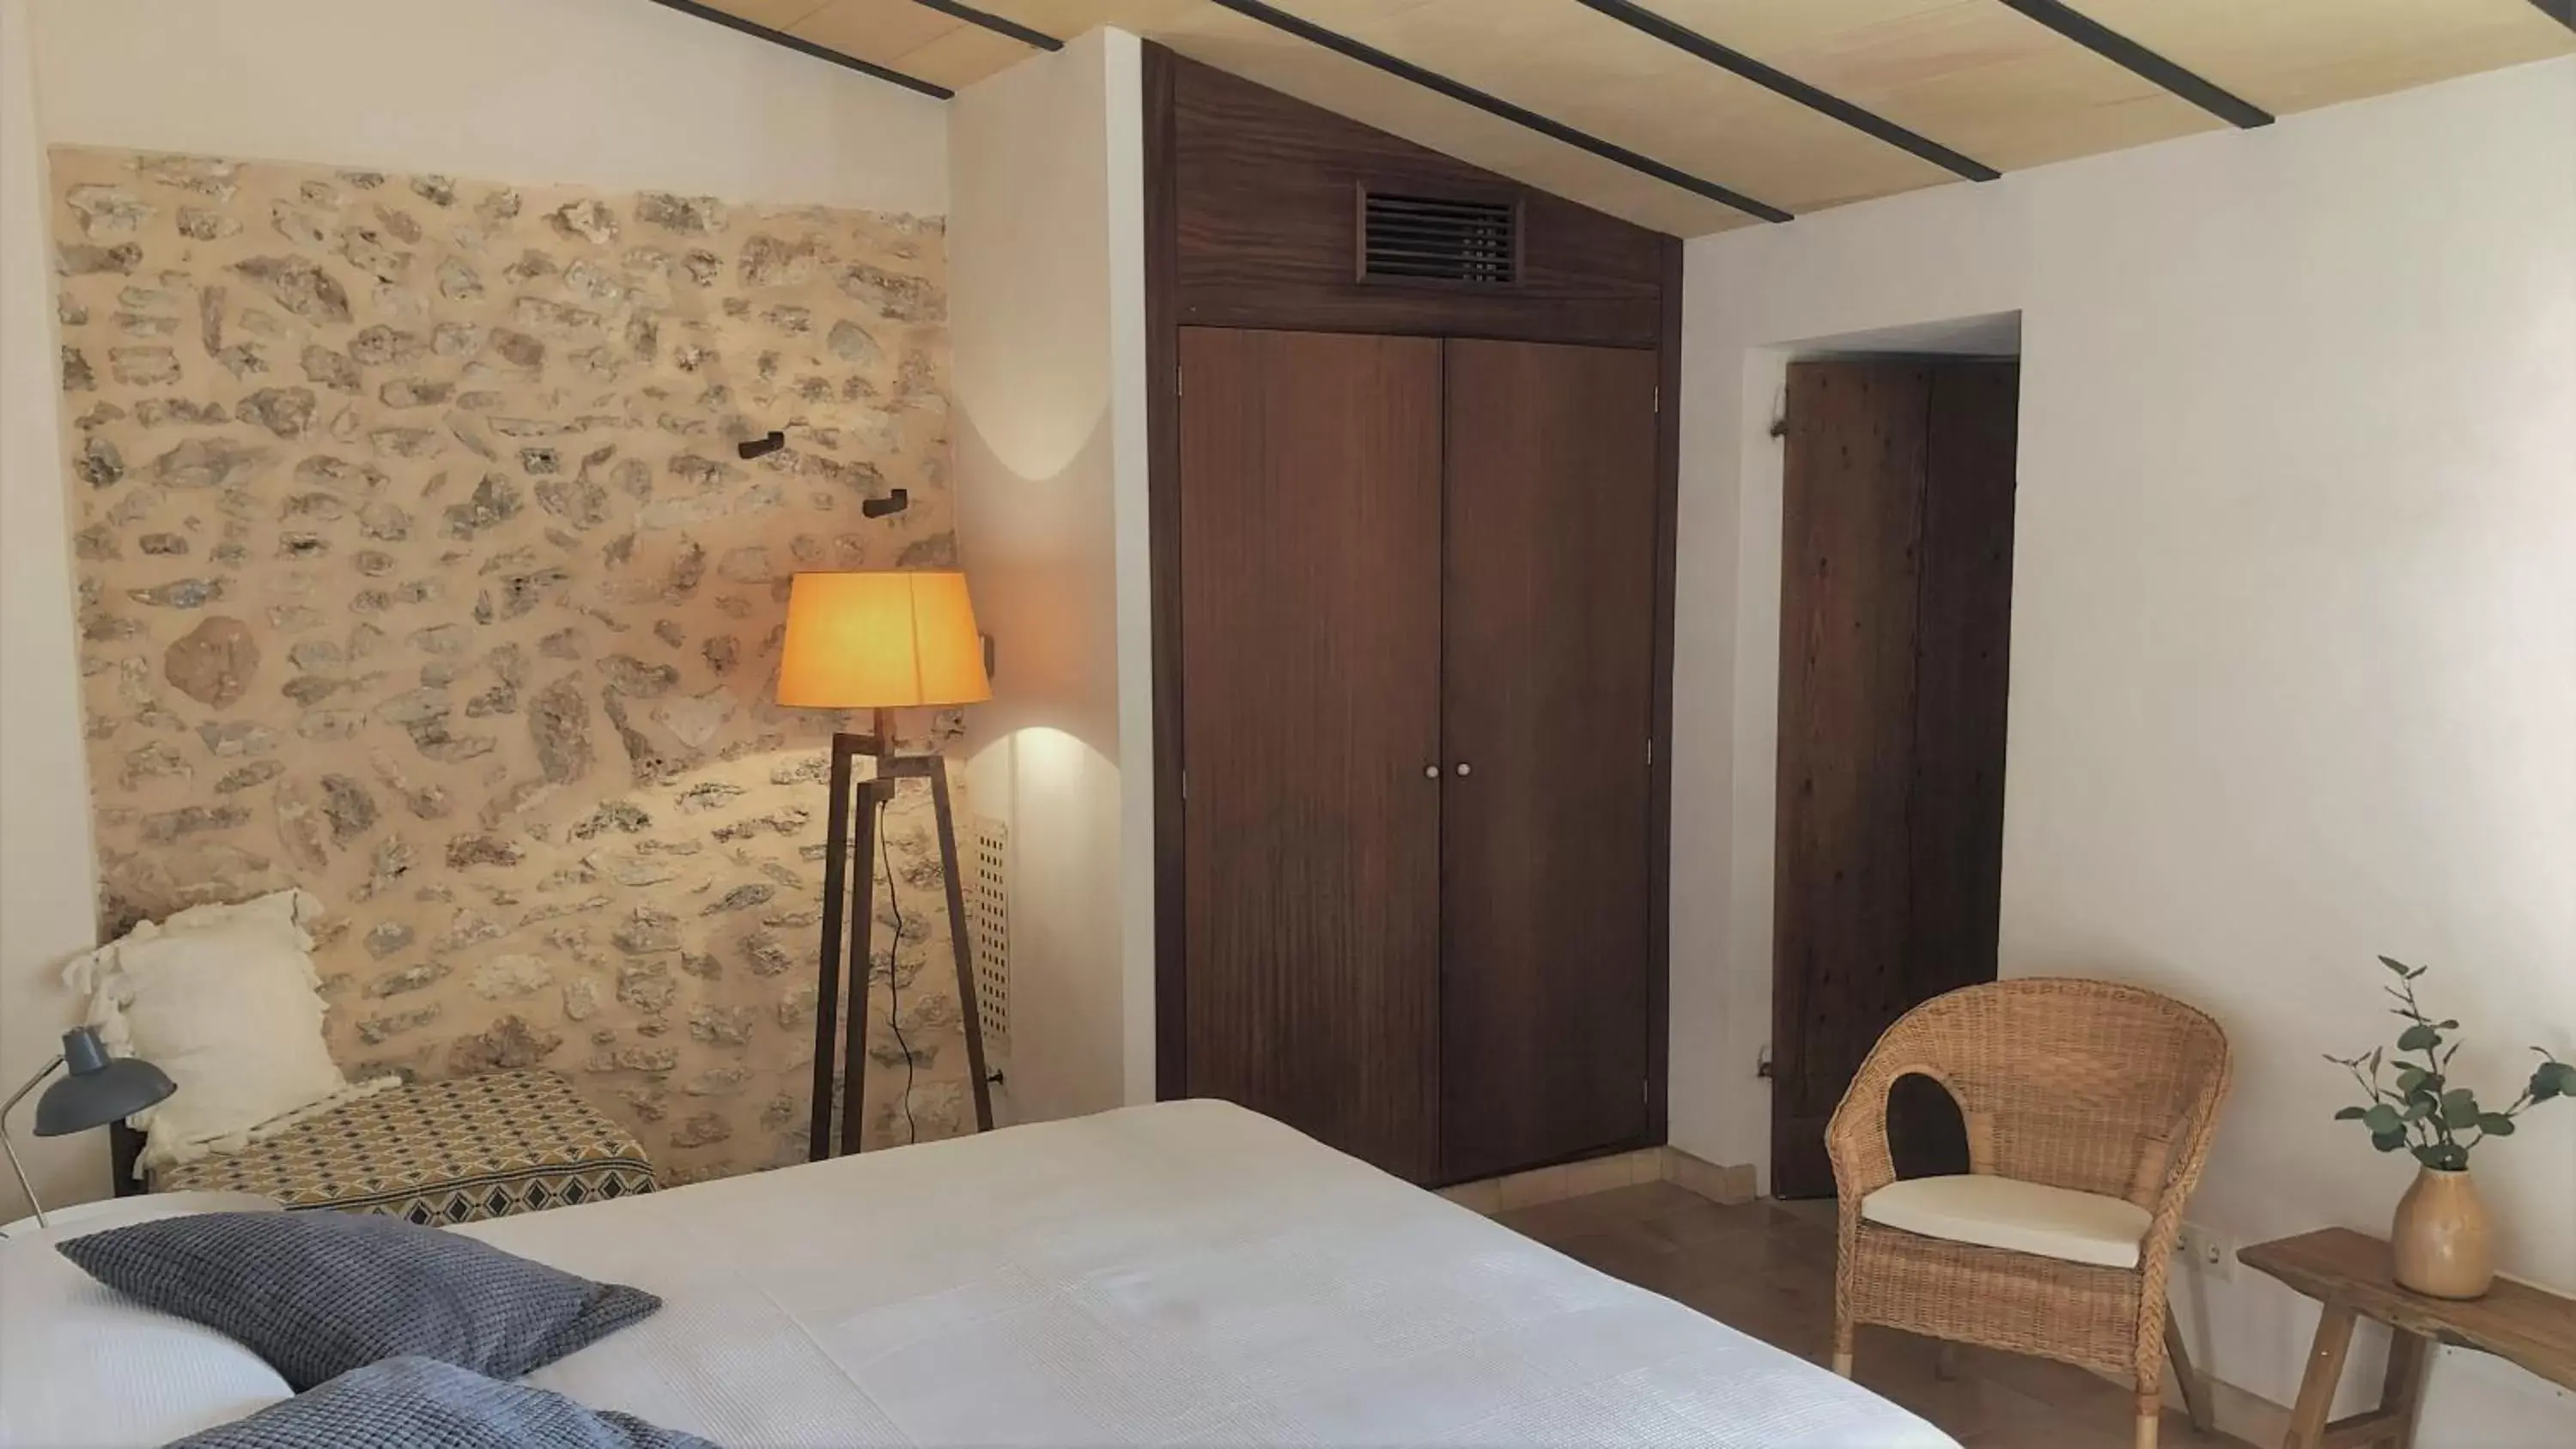 Photo of the whole room, Bed in Vista de la Vila - Turismo de interior.